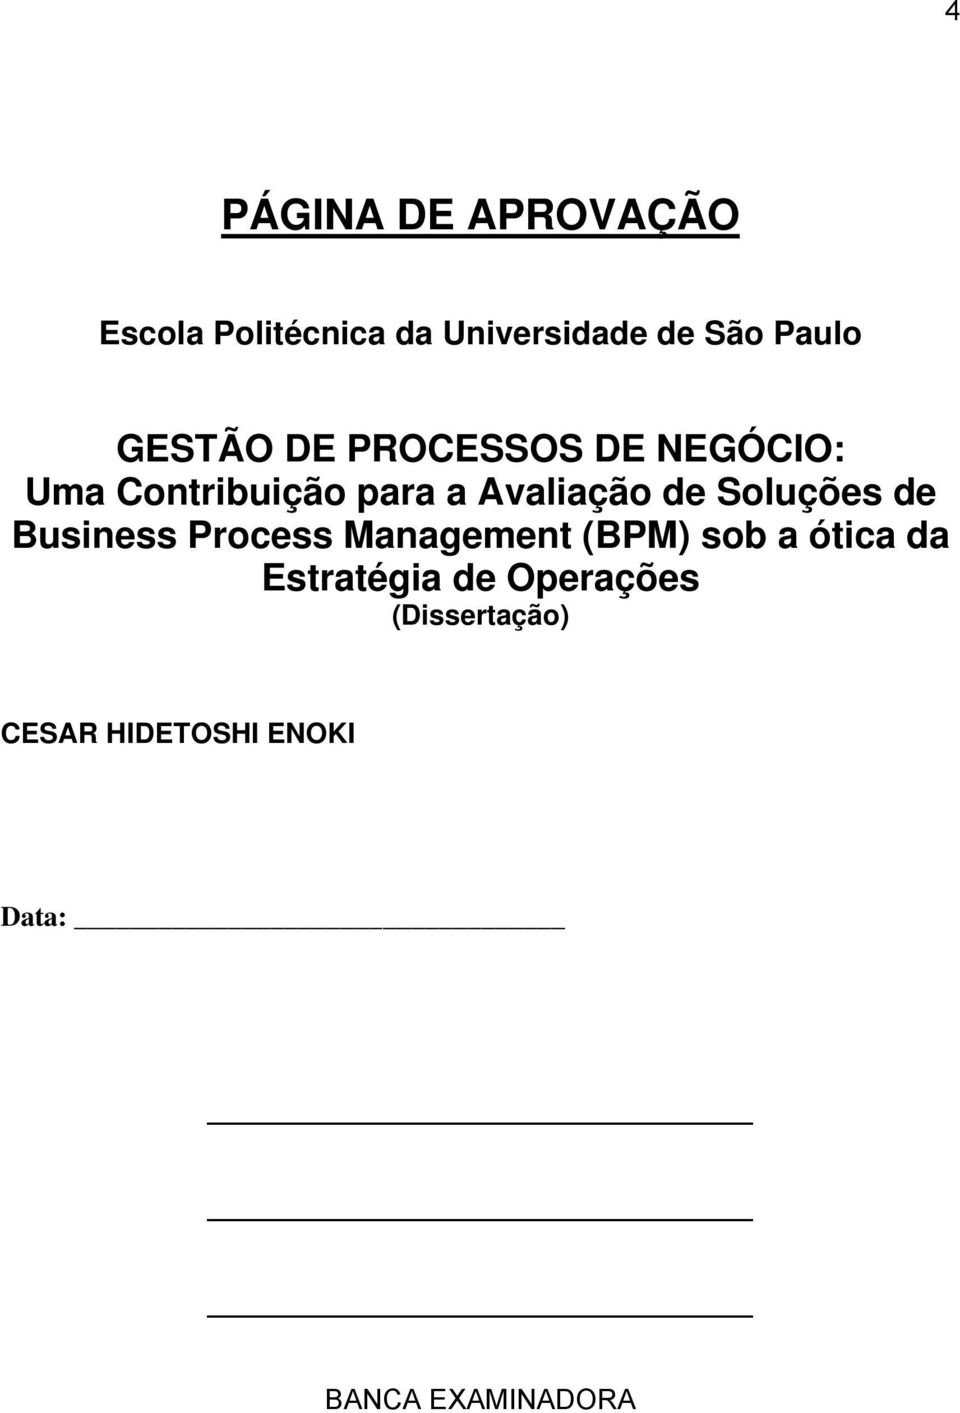 Soluções de Business Process Management (BPM) sob a ótica da